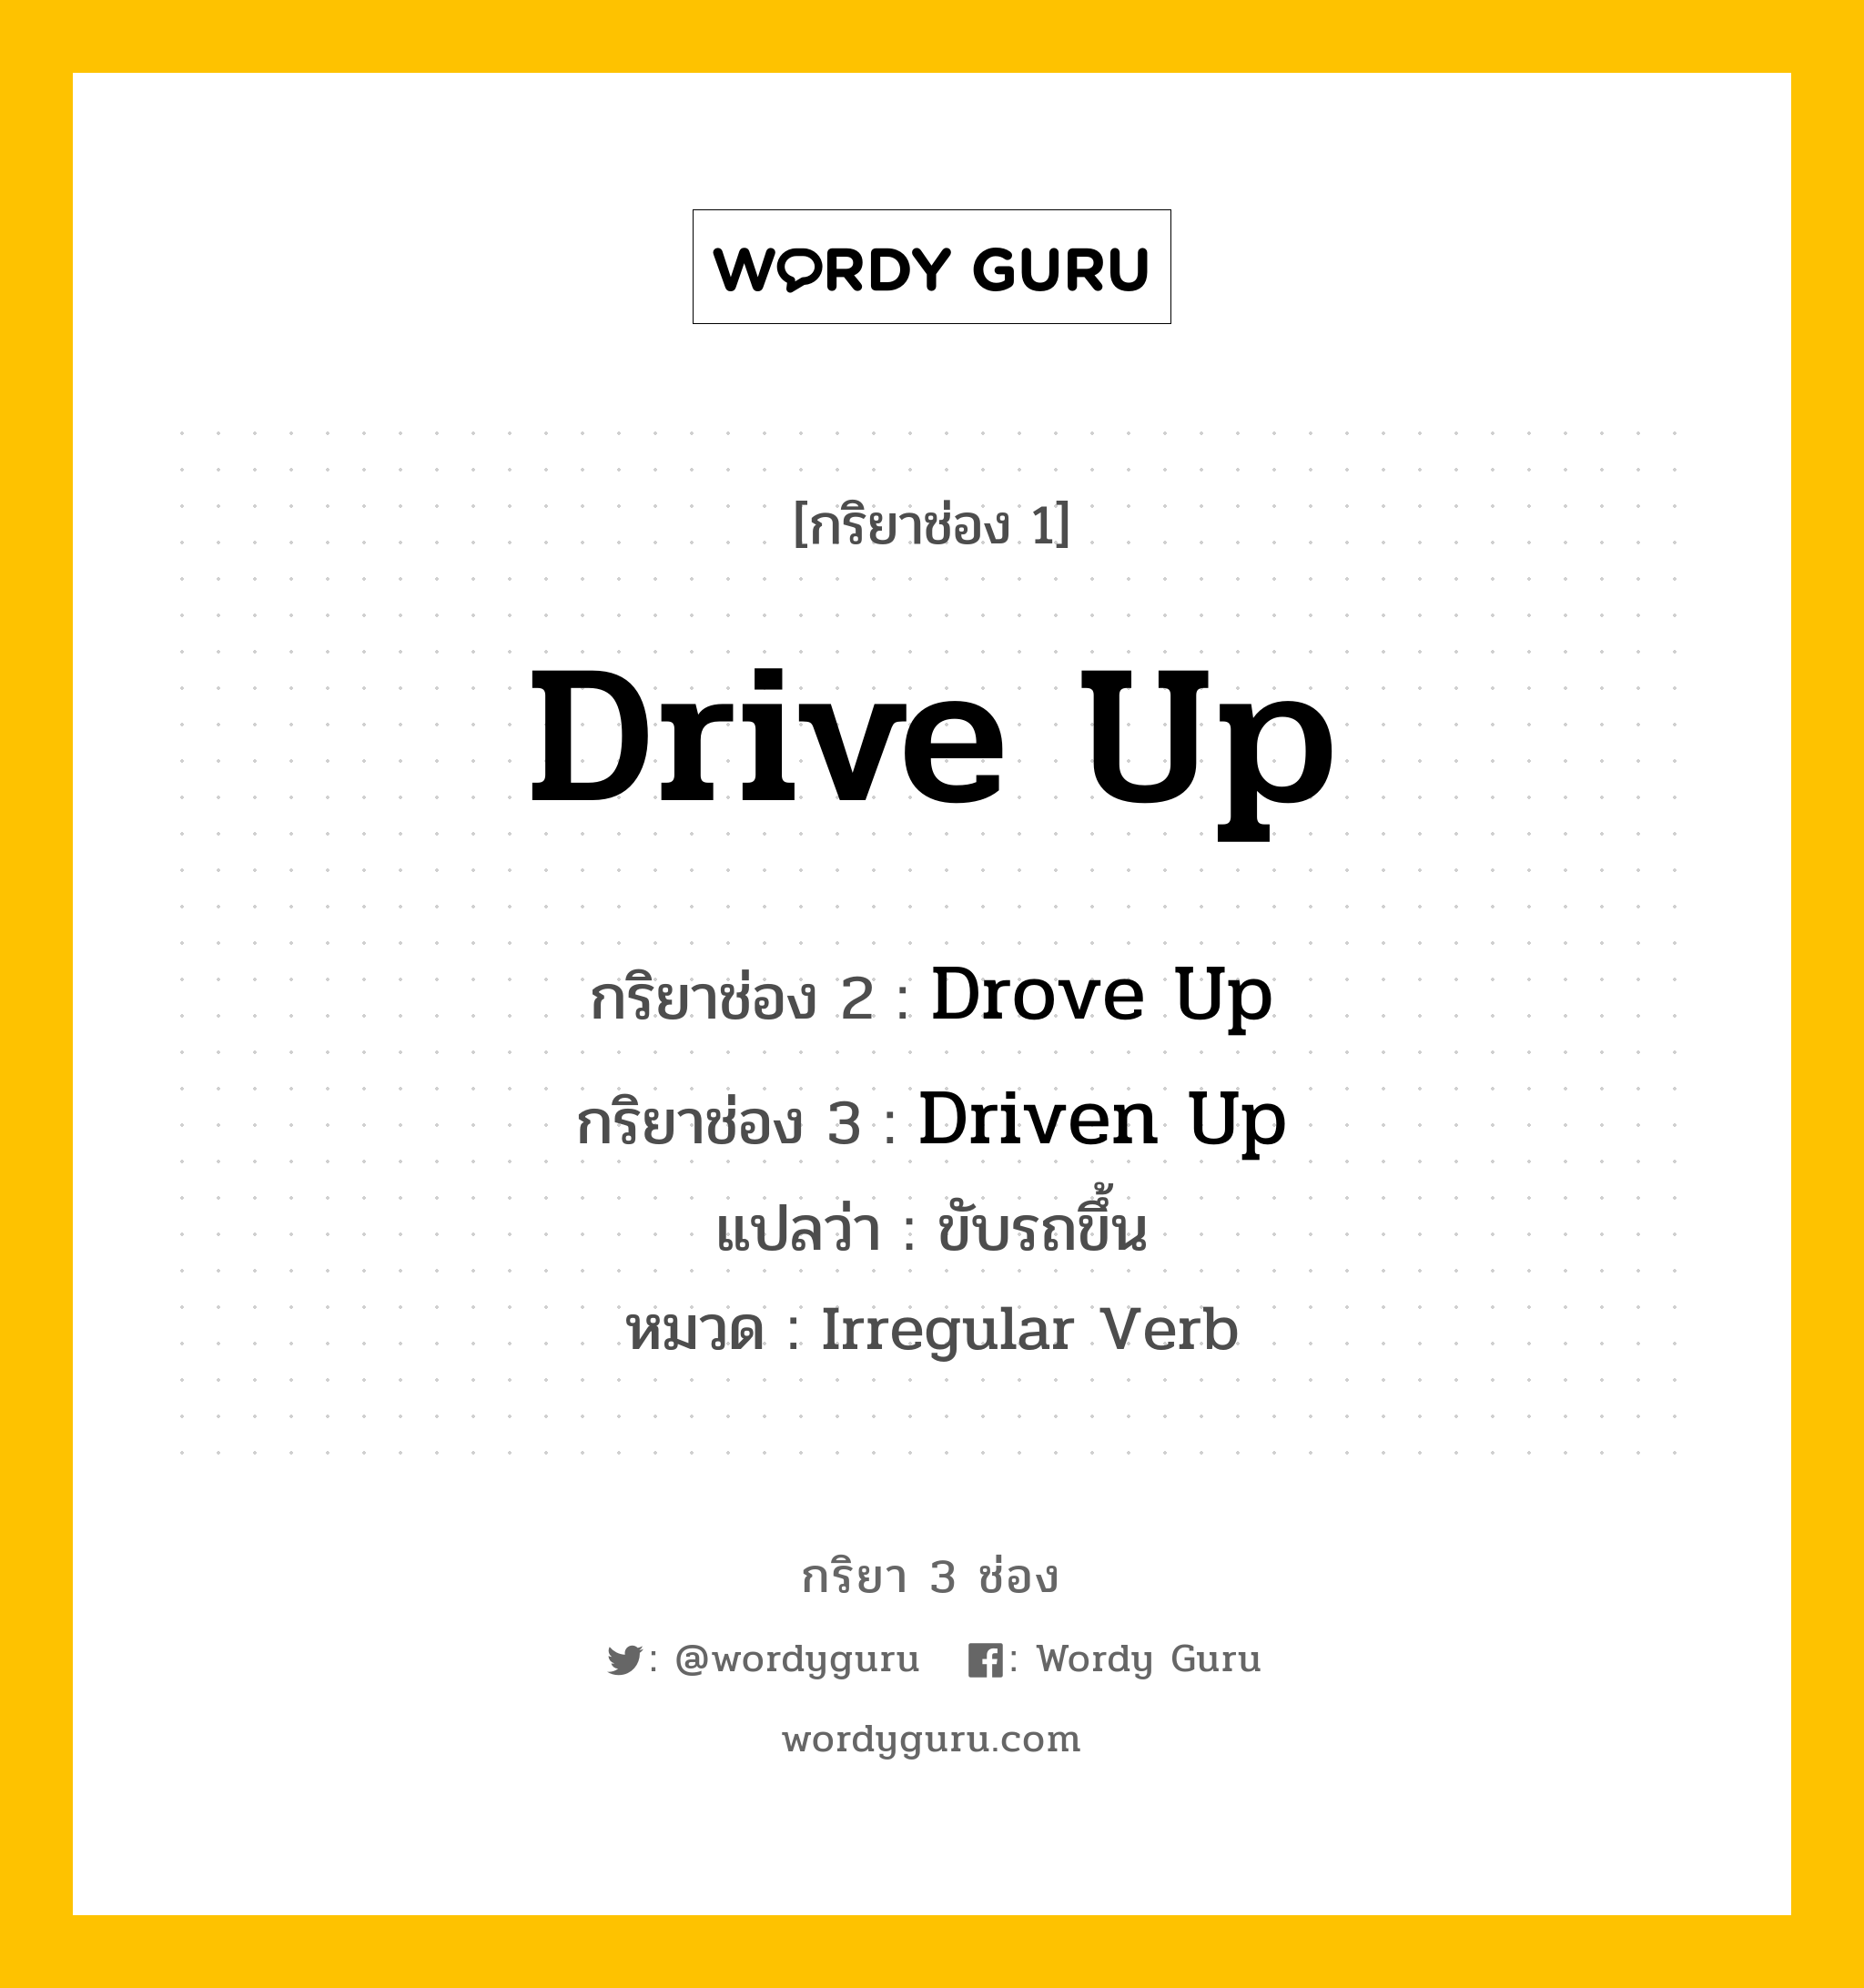 Drive Up มีกริยา 3 ช่องอะไรบ้าง? คำศัพท์ในกลุ่มประเภท Irregular Verb, กริยาช่อง 1 Drive Up กริยาช่อง 2 Drove Up กริยาช่อง 3 Driven Up แปลว่า ขับรถขึ้น หมวด Irregular Verb หมวด Irregular Verb